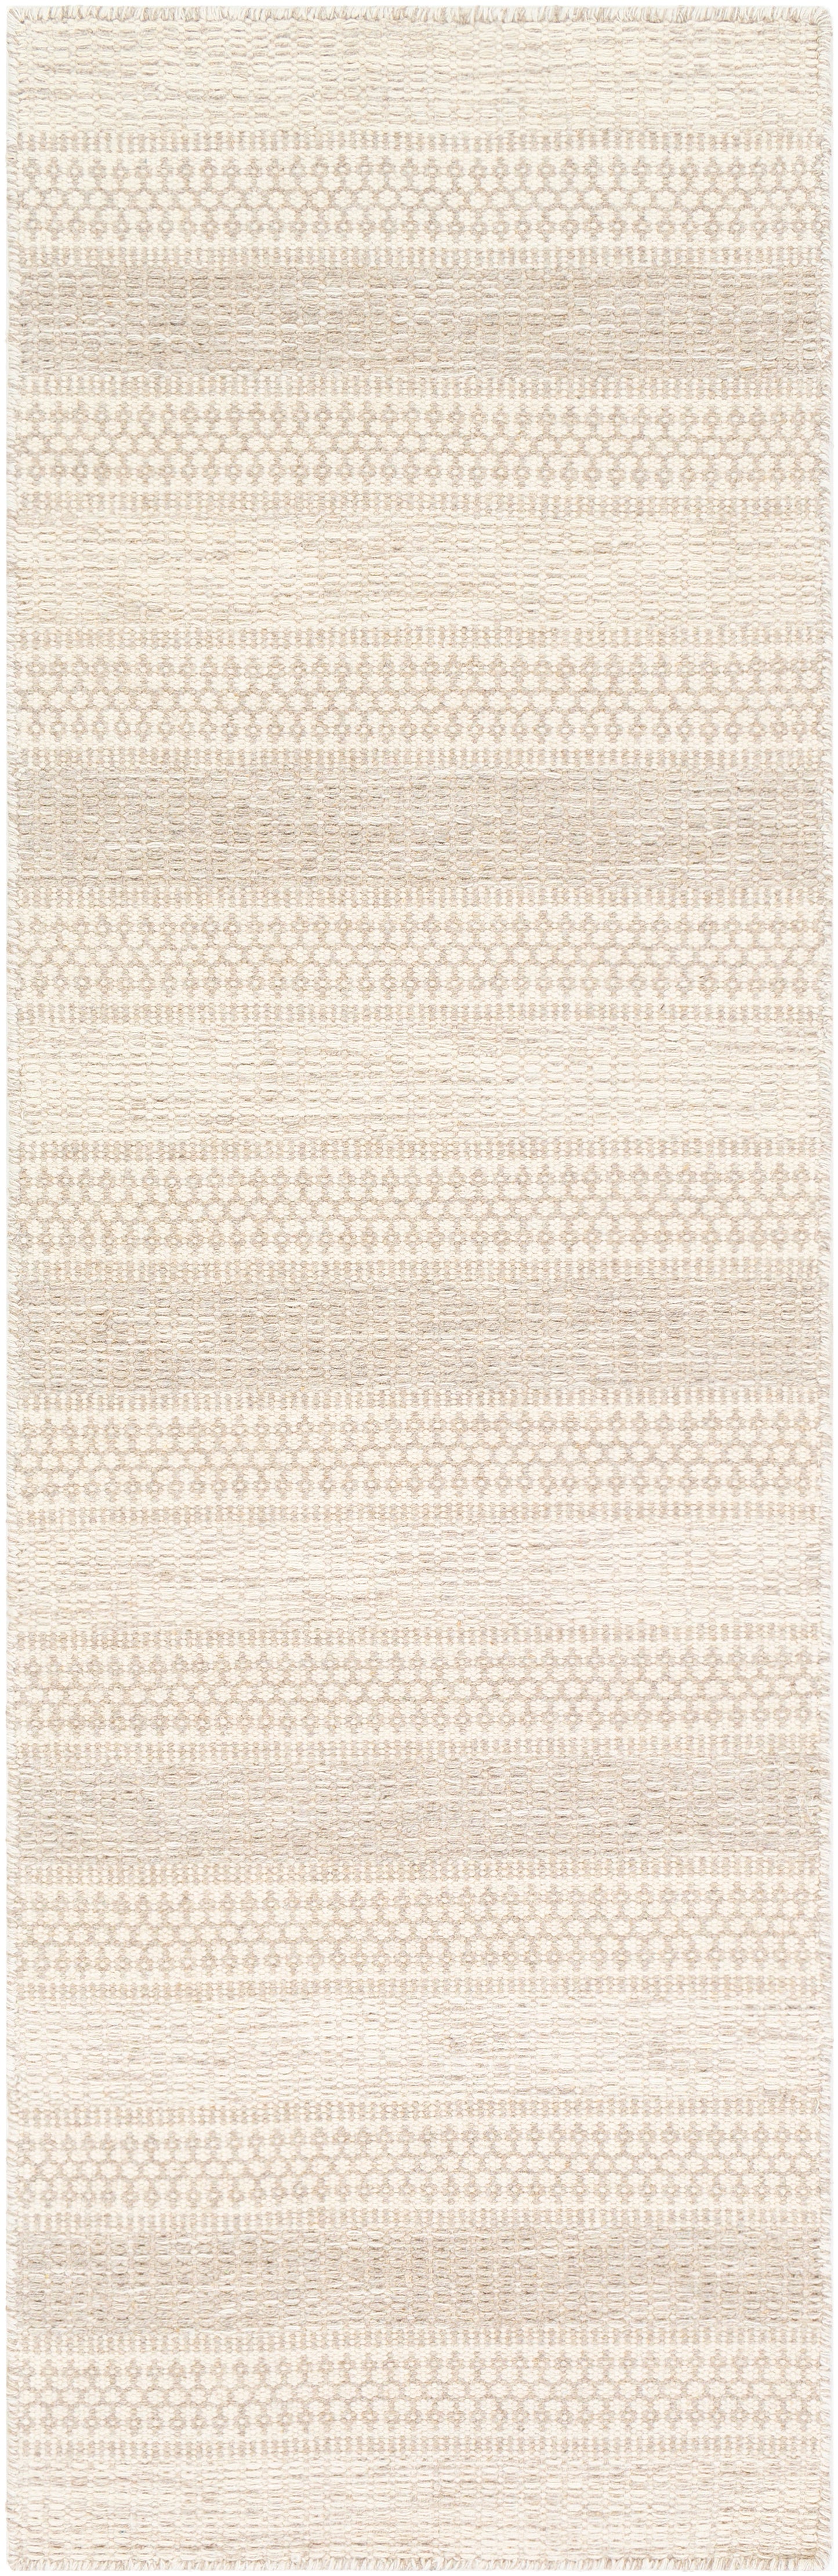 Mardin 24188 Hand Woven Wool Indoor Area Rug by Surya Rugs